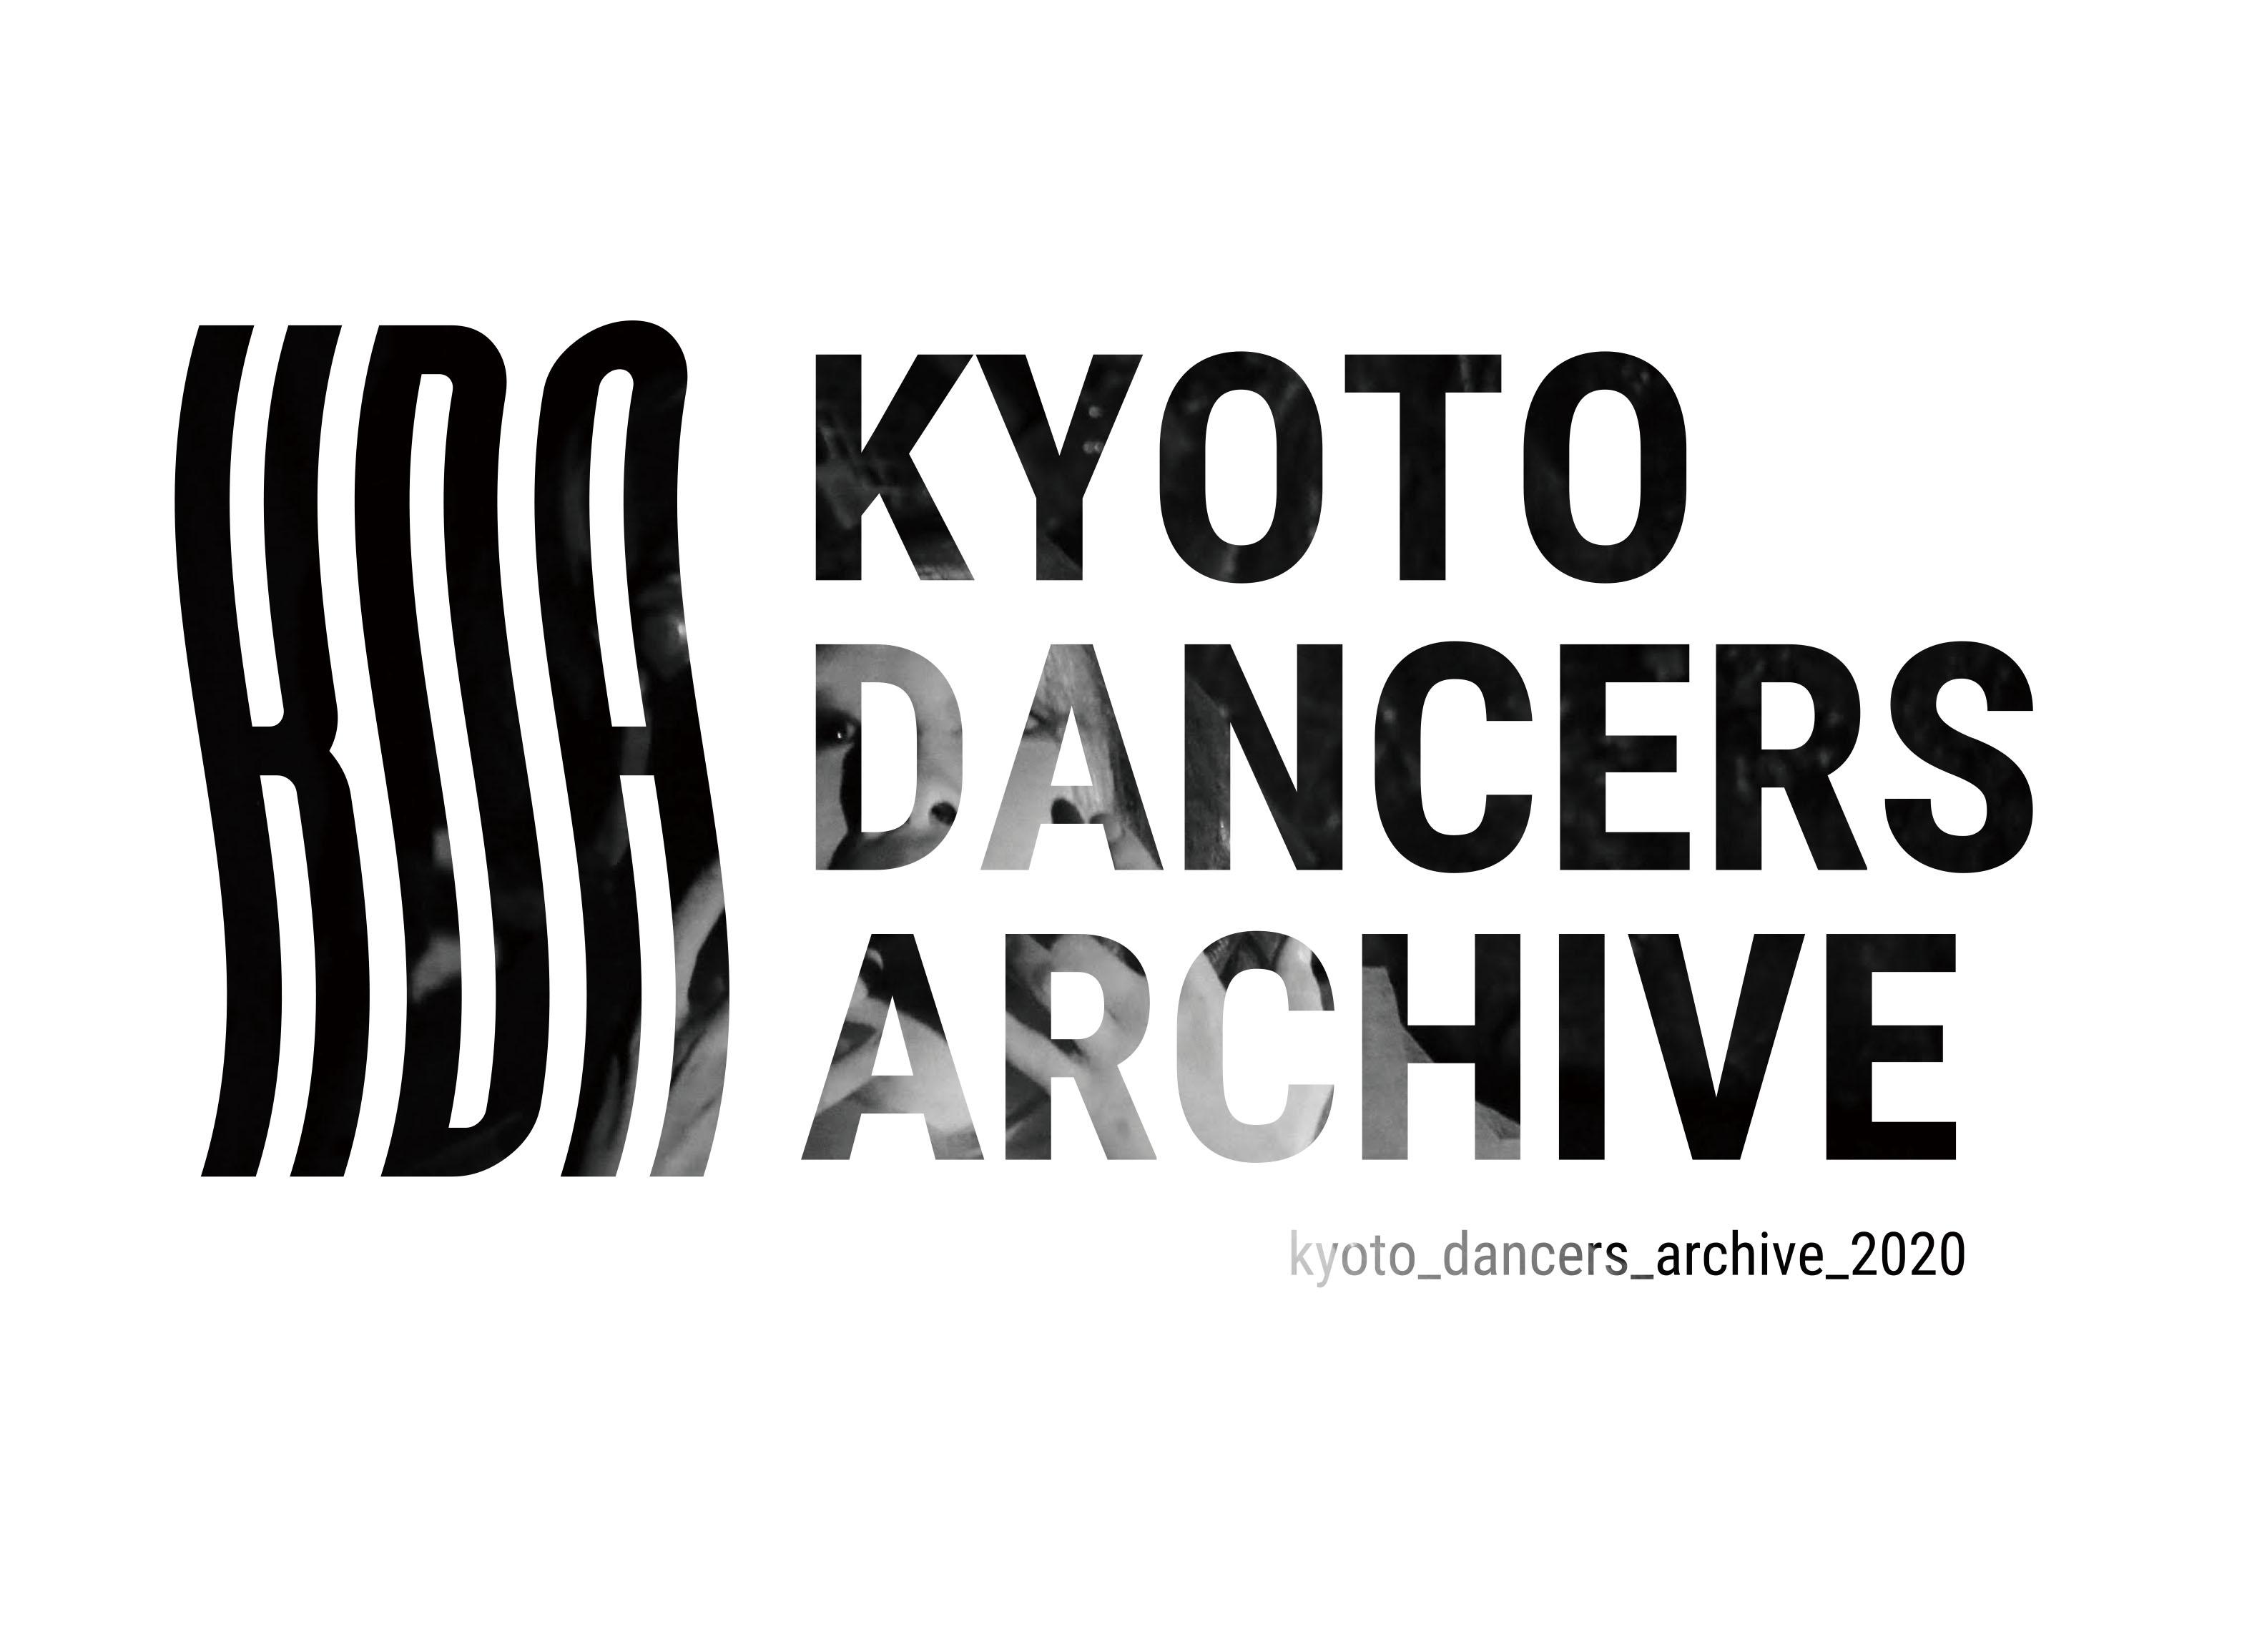 KYOTO DANCERS ARCHIVE 2020 ダウンロード販売、商用利用申請